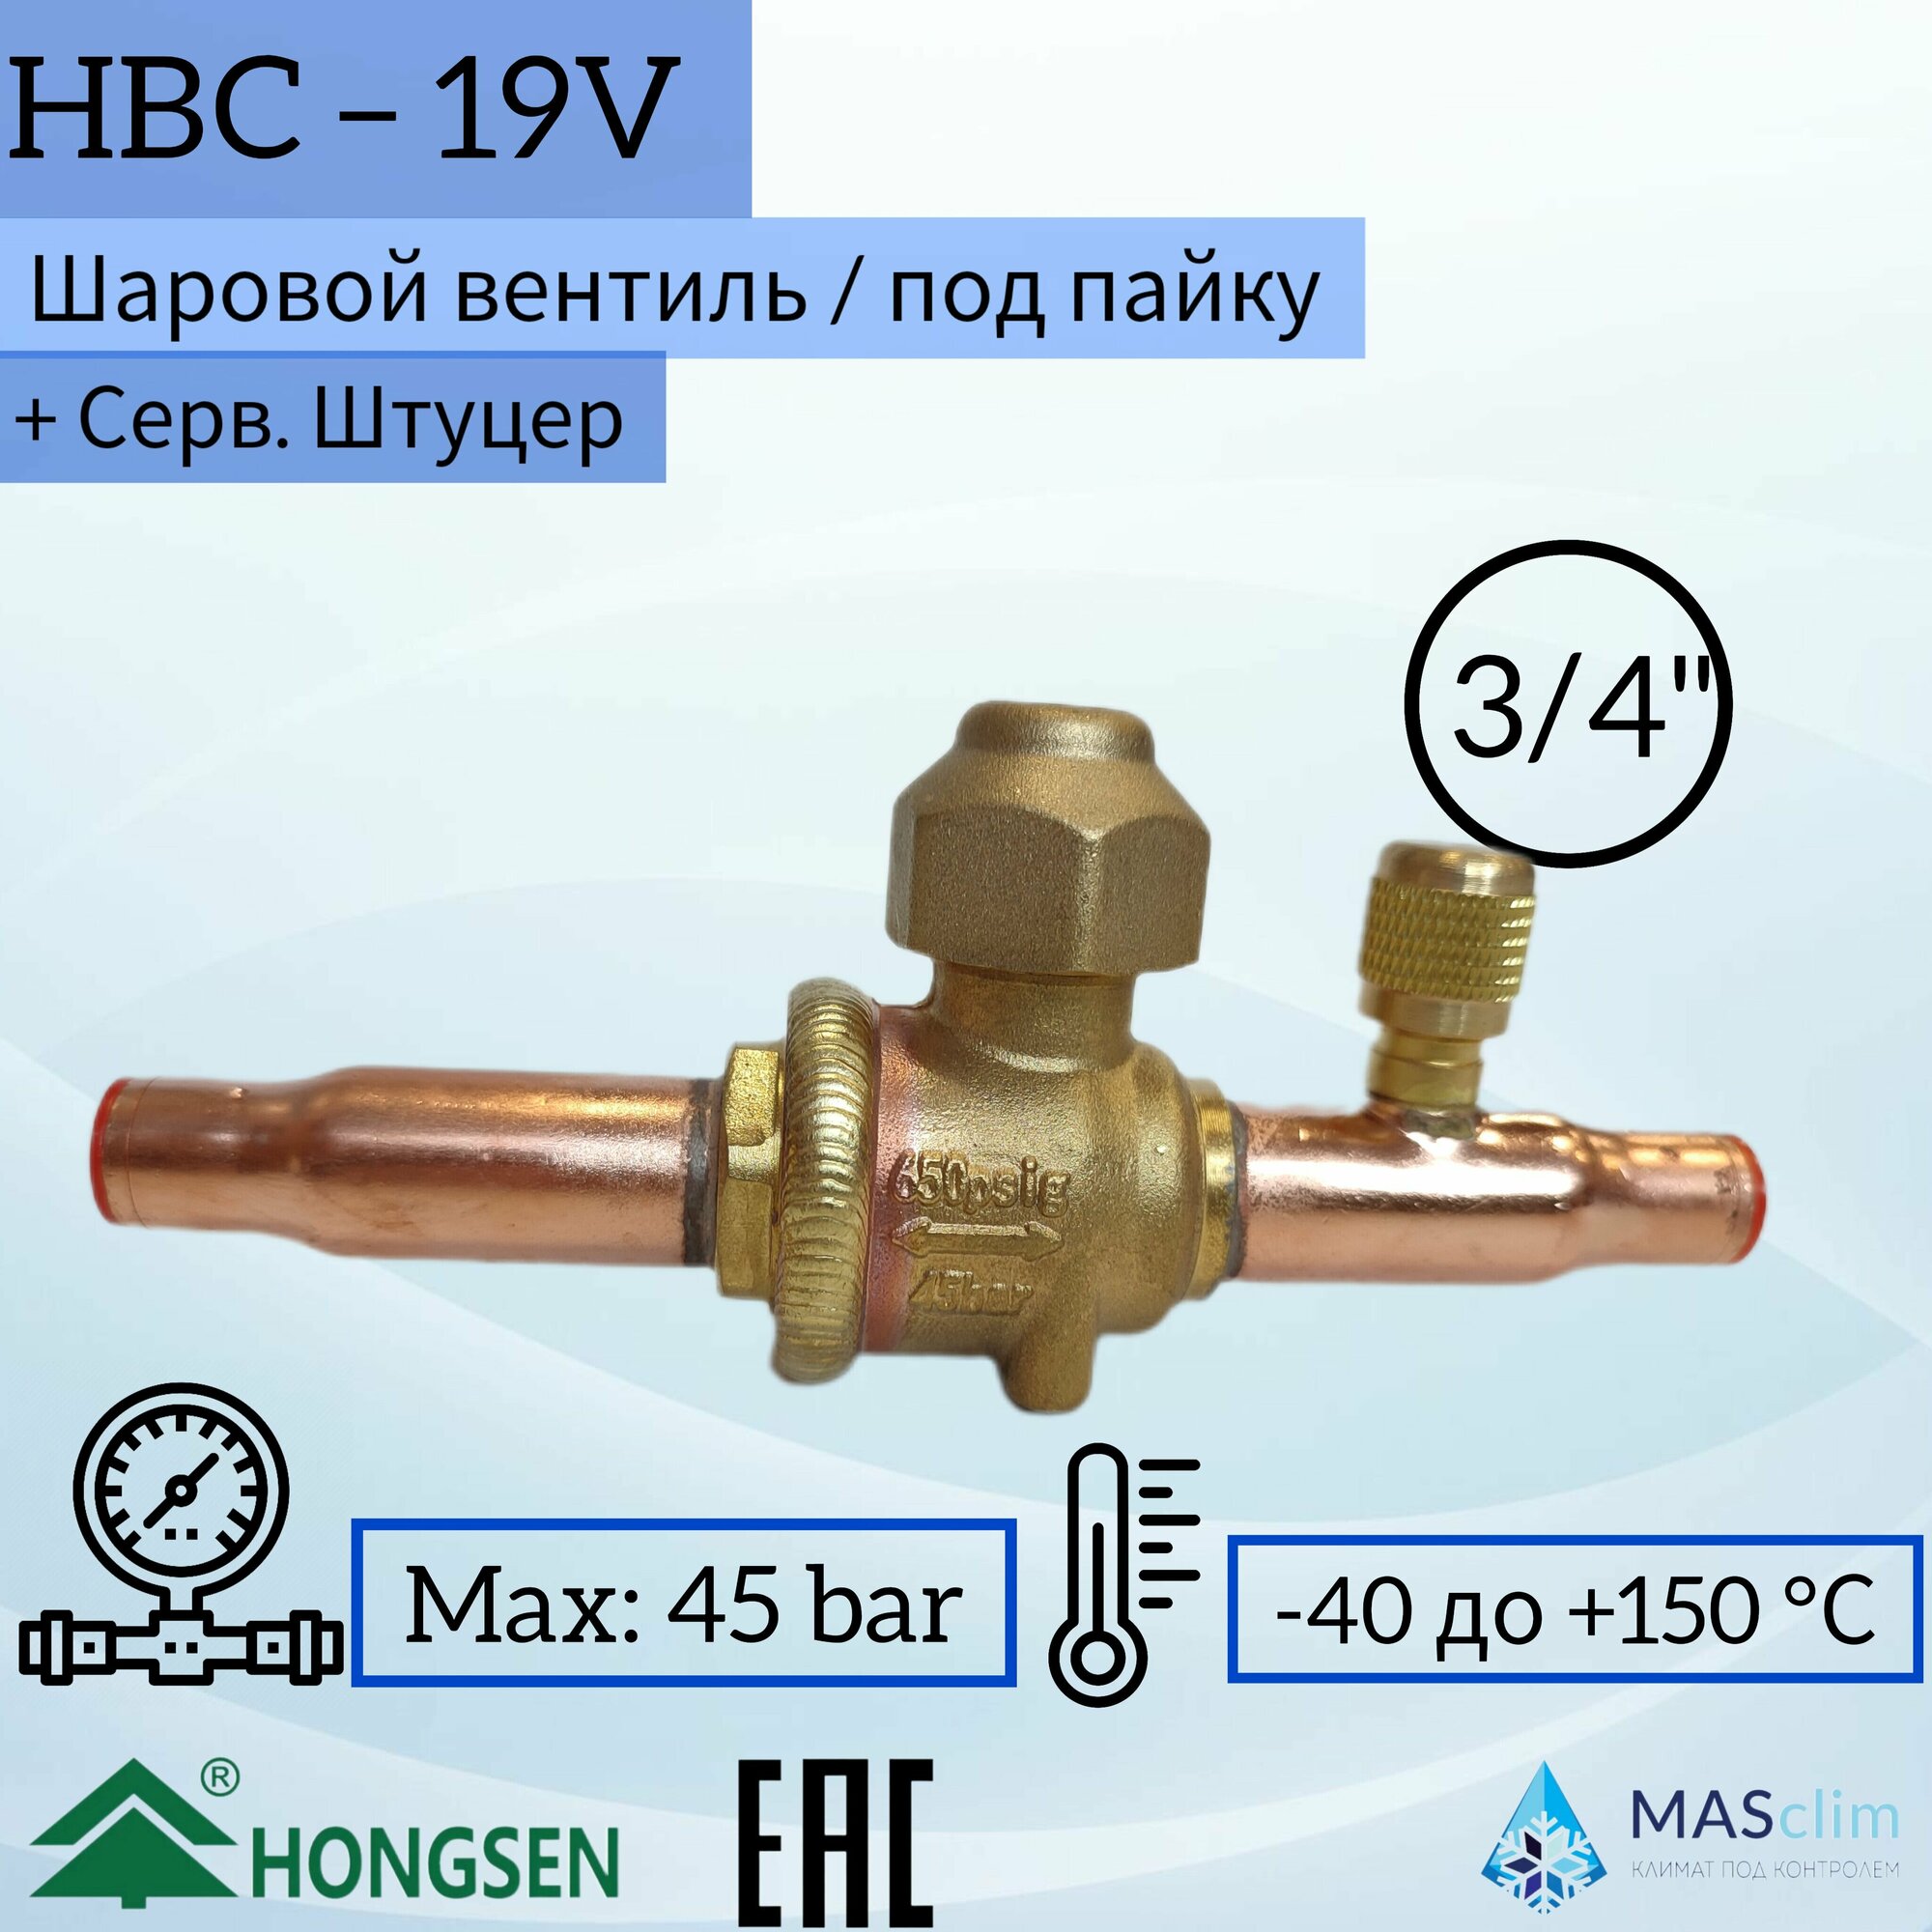 Шаровой кран Hongsen HBC-19V, 3/4, пайка, сервисный штуцер